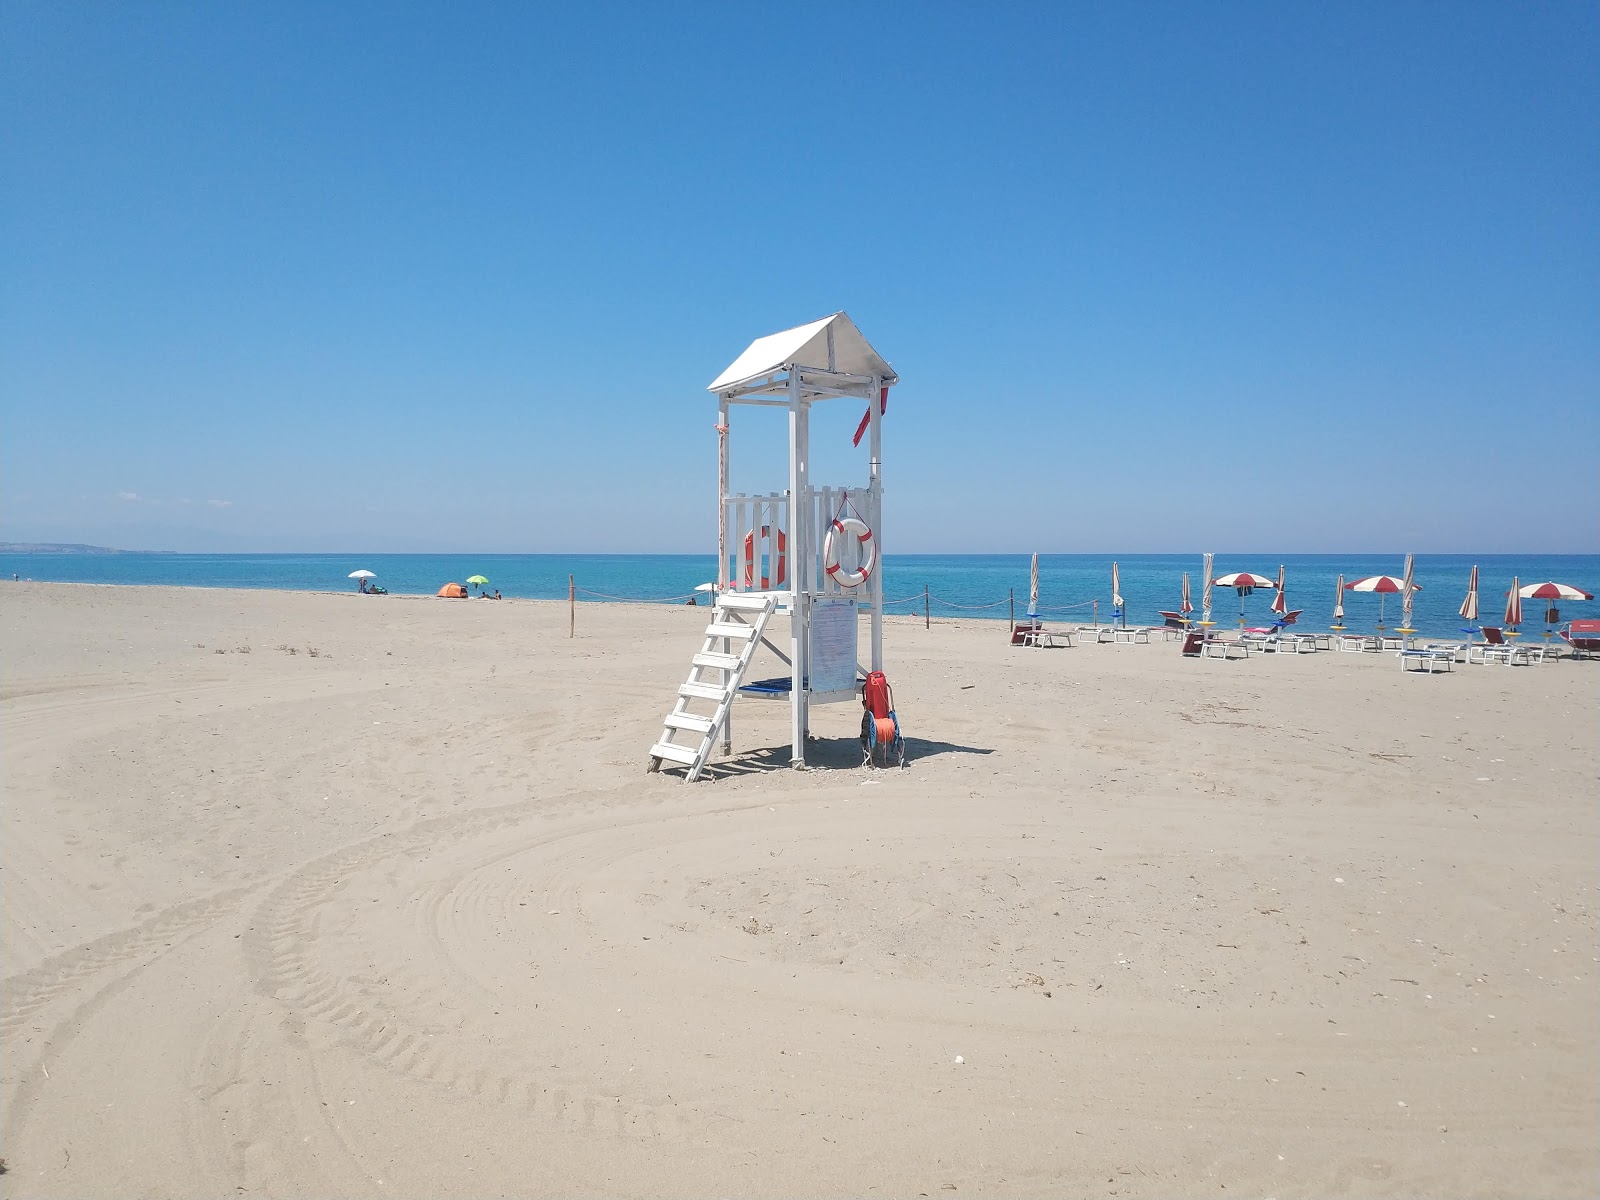 Photo de Mandatoriccio-Campana beach - endroit populaire parmi les connaisseurs de la détente